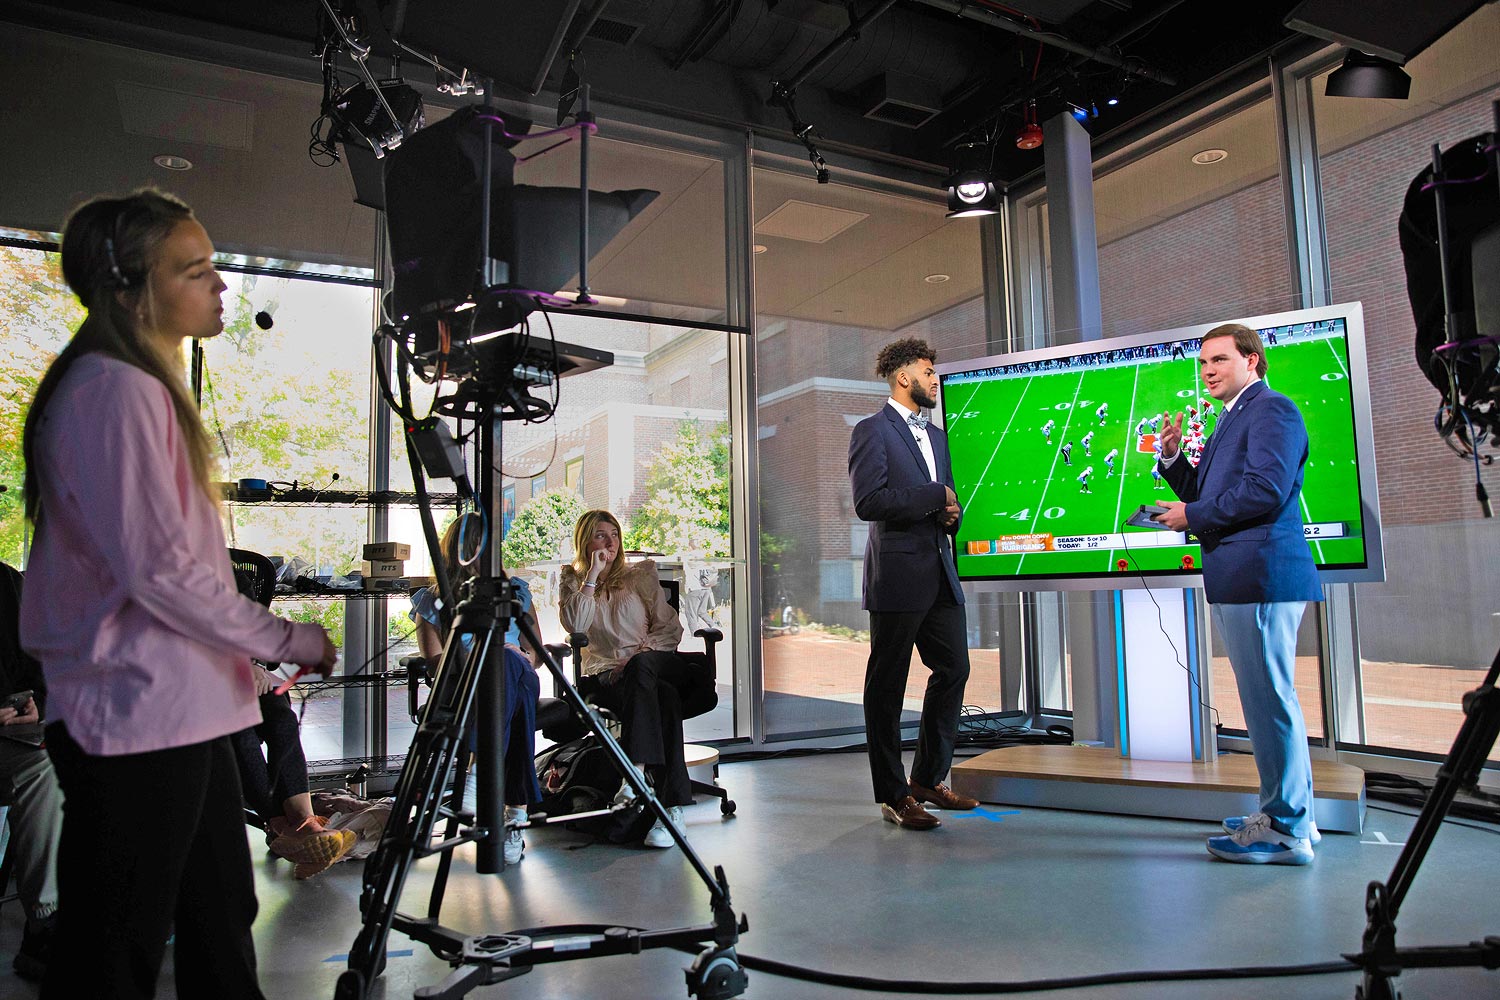 Le présentateur du programme Sports Xtra analyse un match de foot avec l'un des joueurs de l'UNC dans le studio de télévision James F. Goodman.